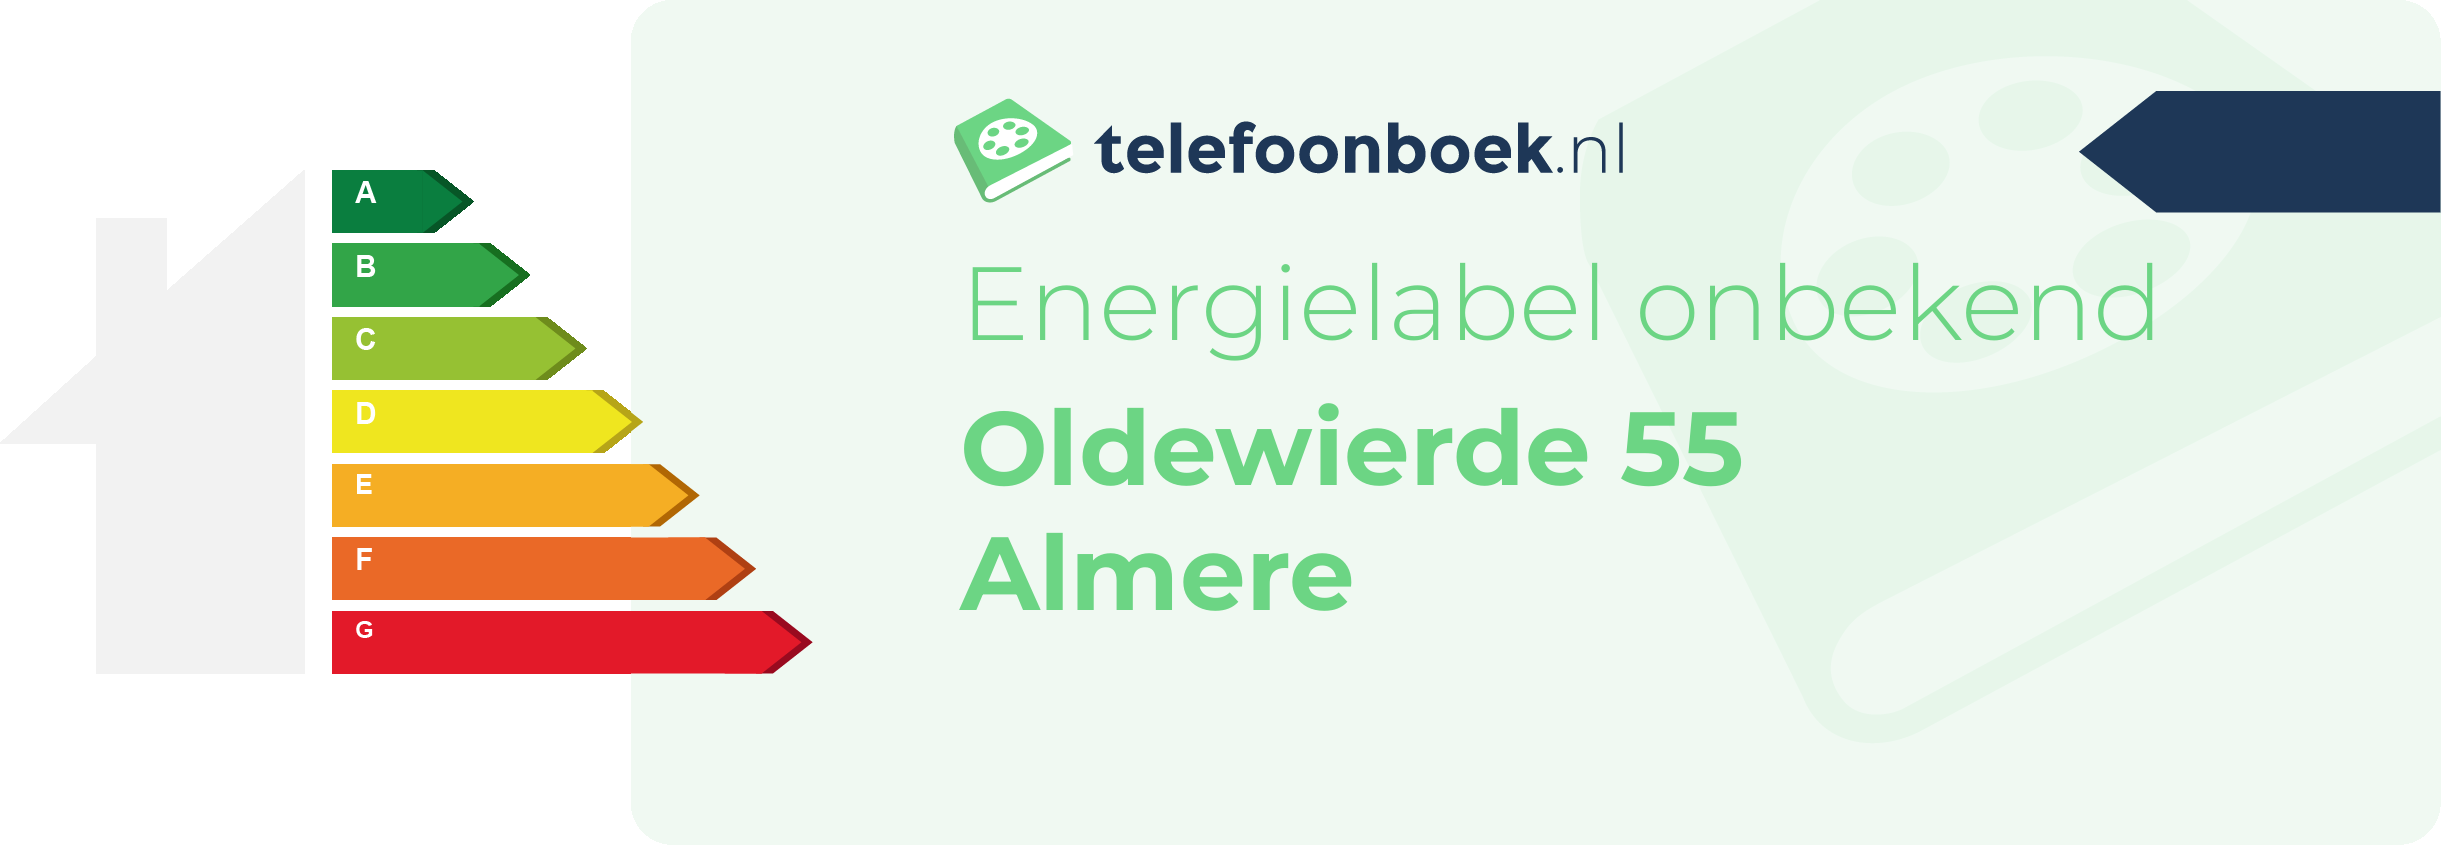 Energielabel Oldewierde 55 Almere